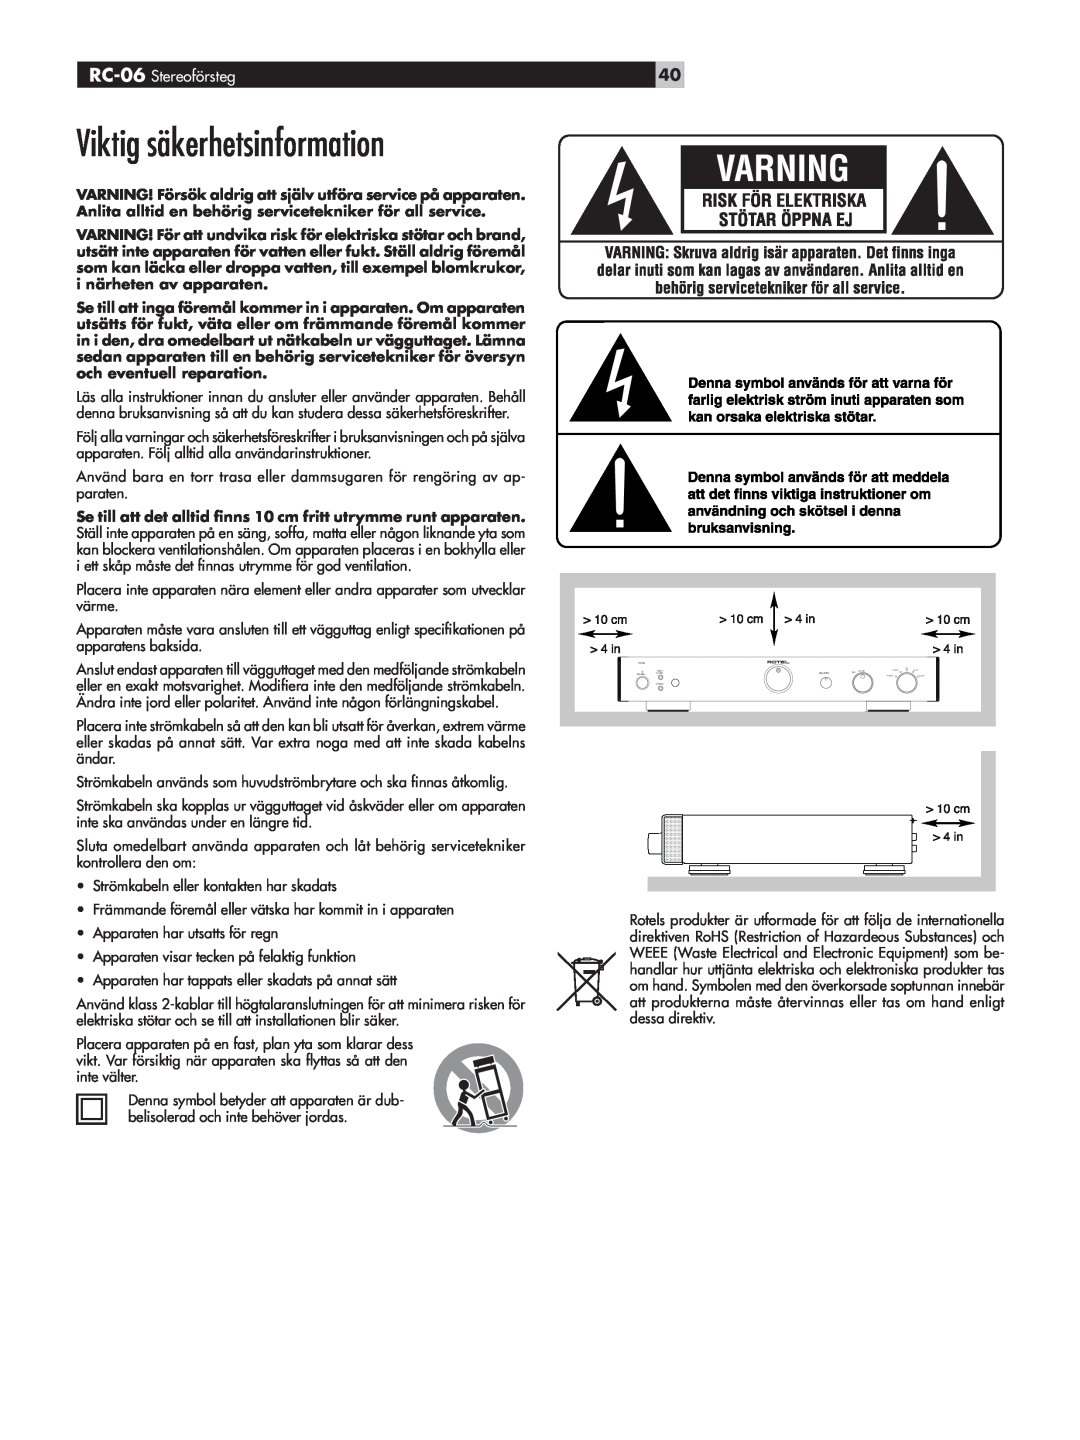 Rotel owner manual Viktig säkerhetsinformation, RC-06 Stereoförsteg 